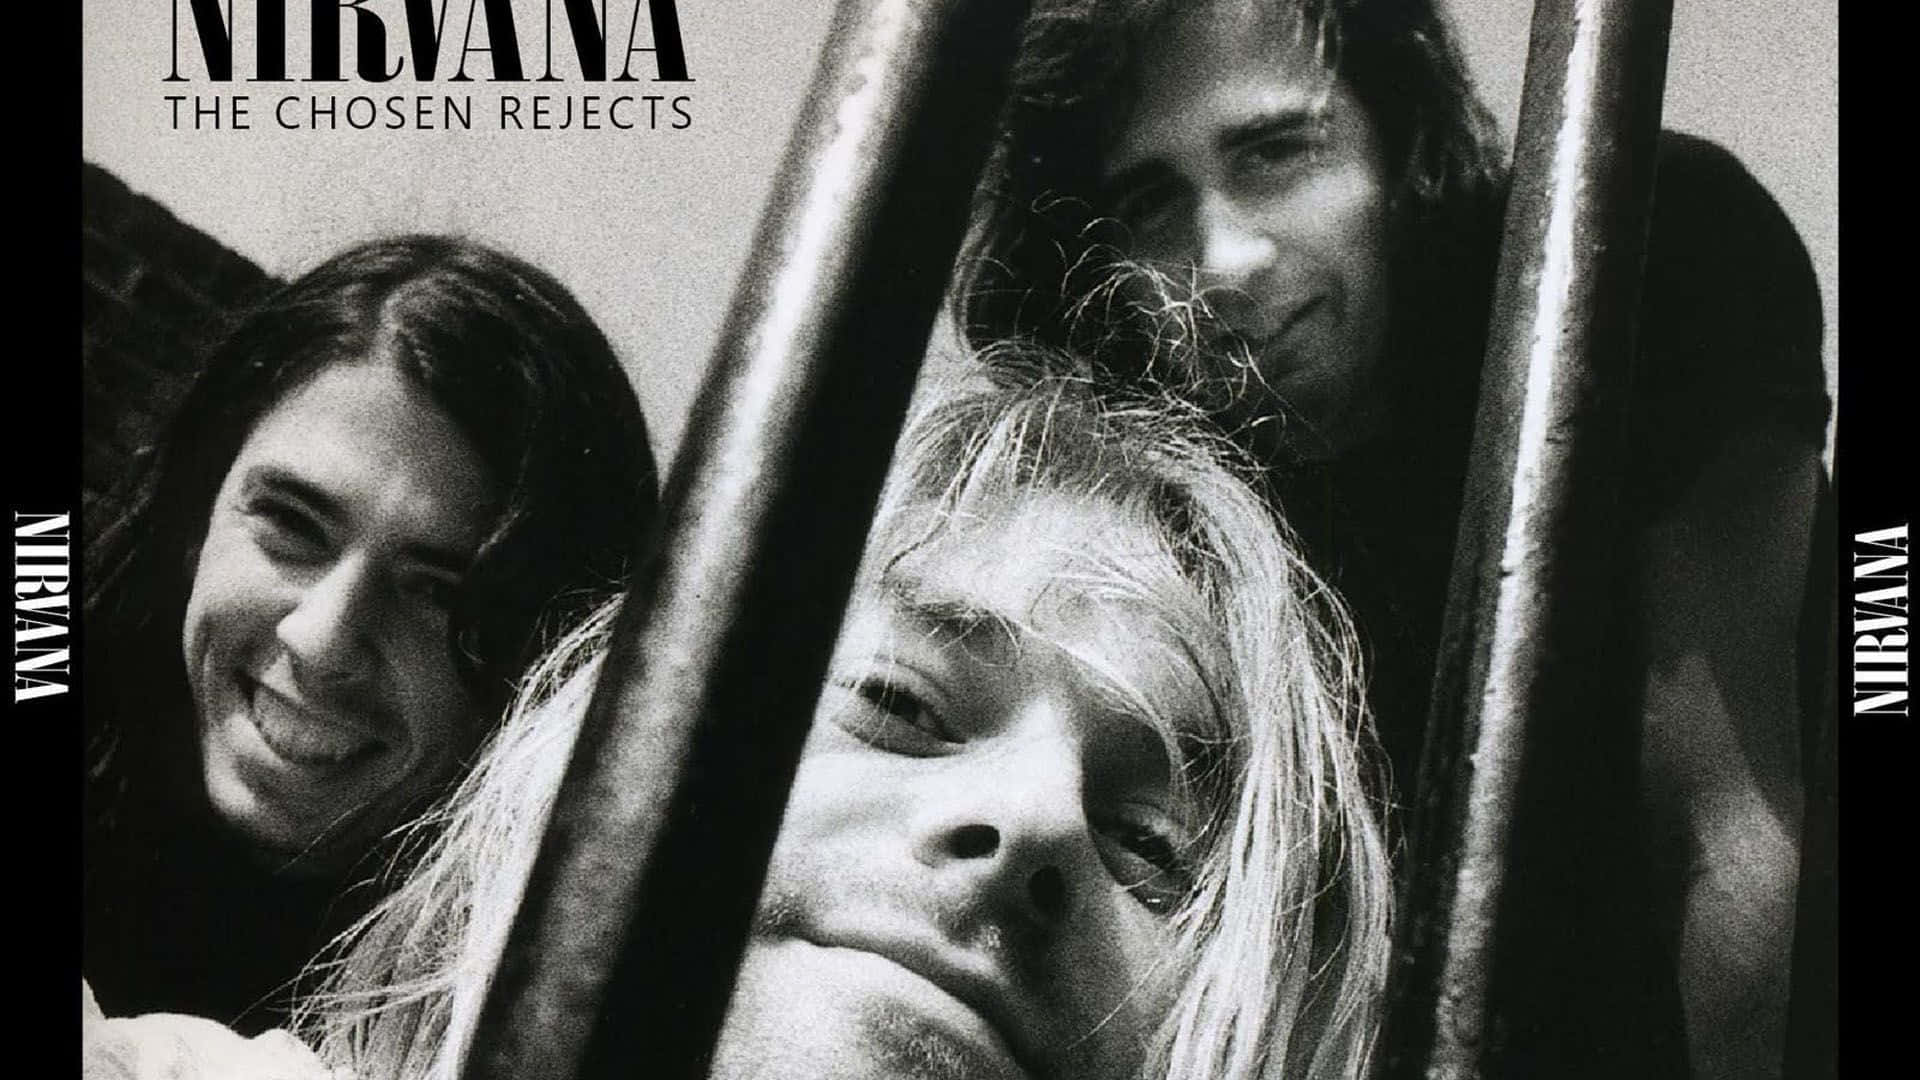 Íconoicónico De La Sonrisa De Nirvana En Un Fondo Desgastado